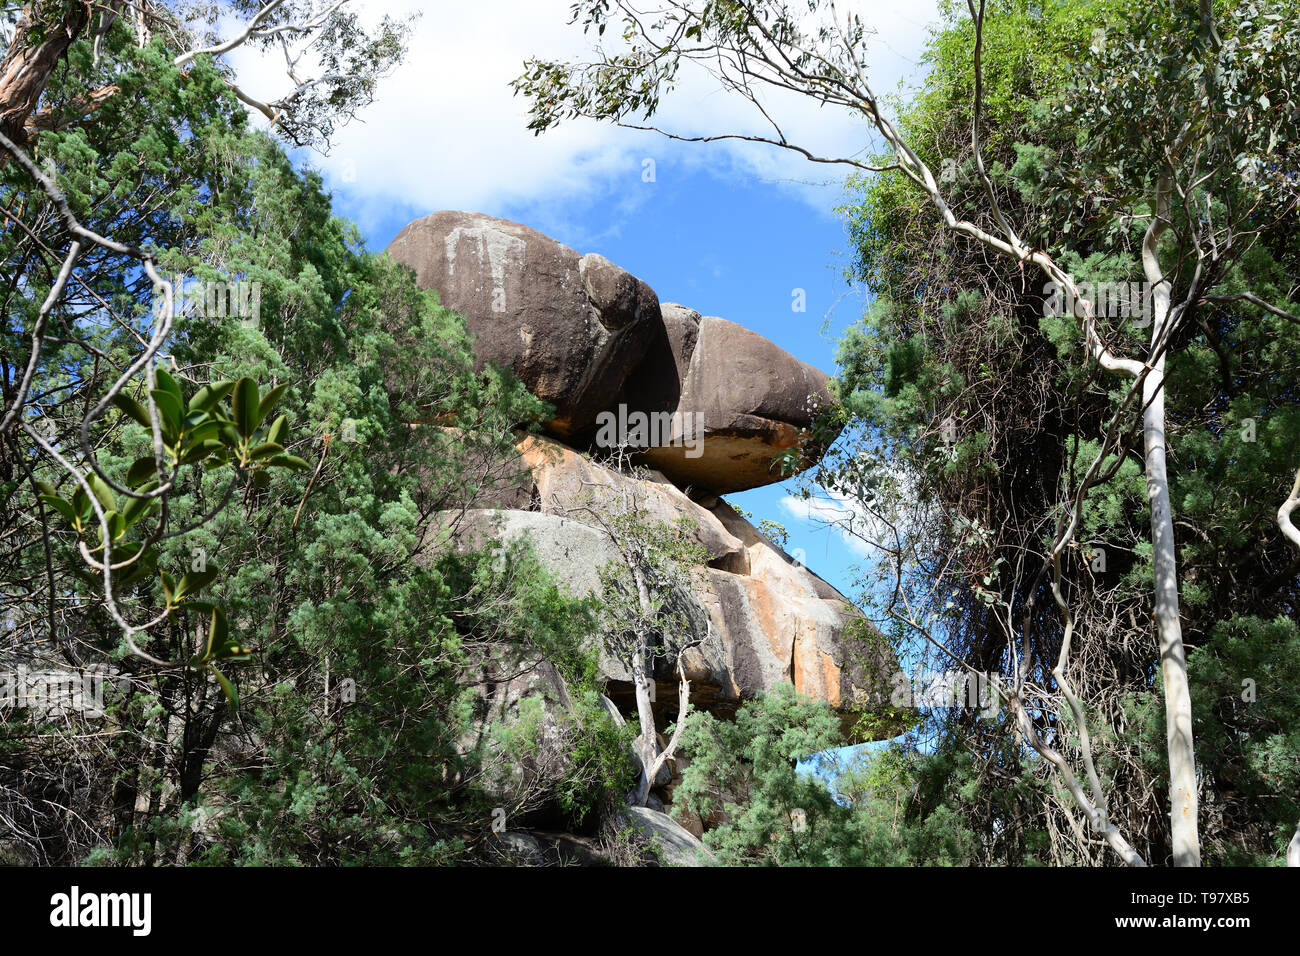 Deux roches sur une falaise, dans une forêt d'eucalyptus au nord de Tamworth Australie. Banque D'Images